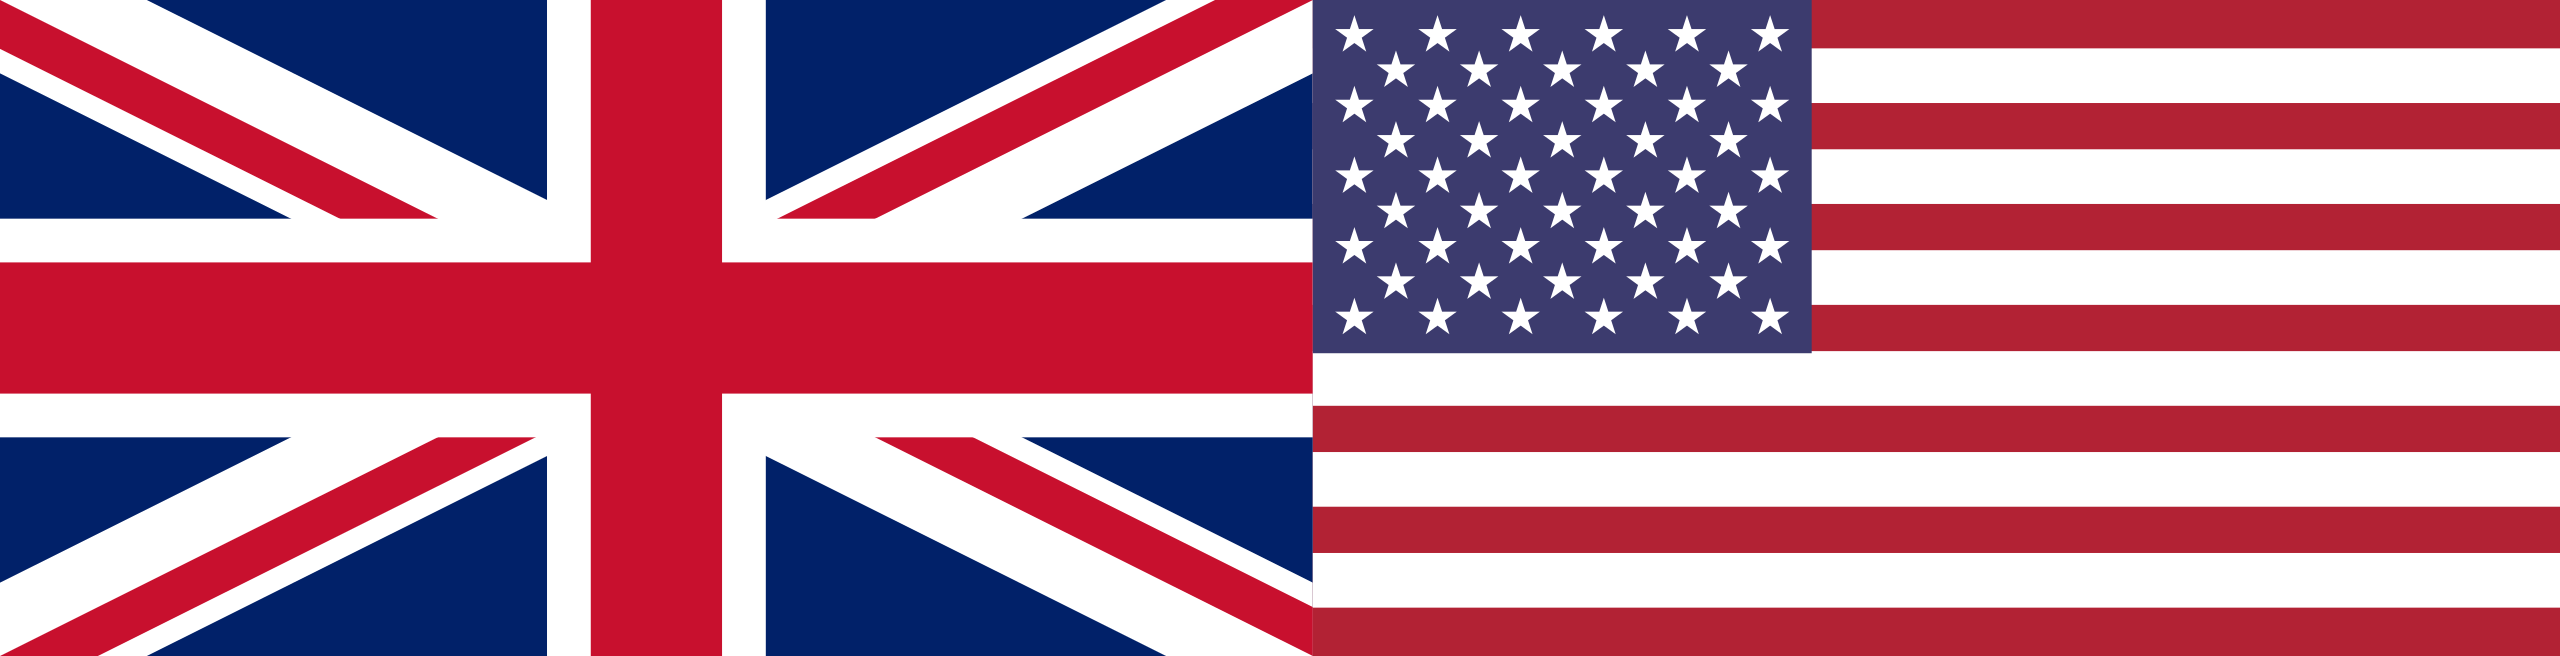 drapeau anglais et américain